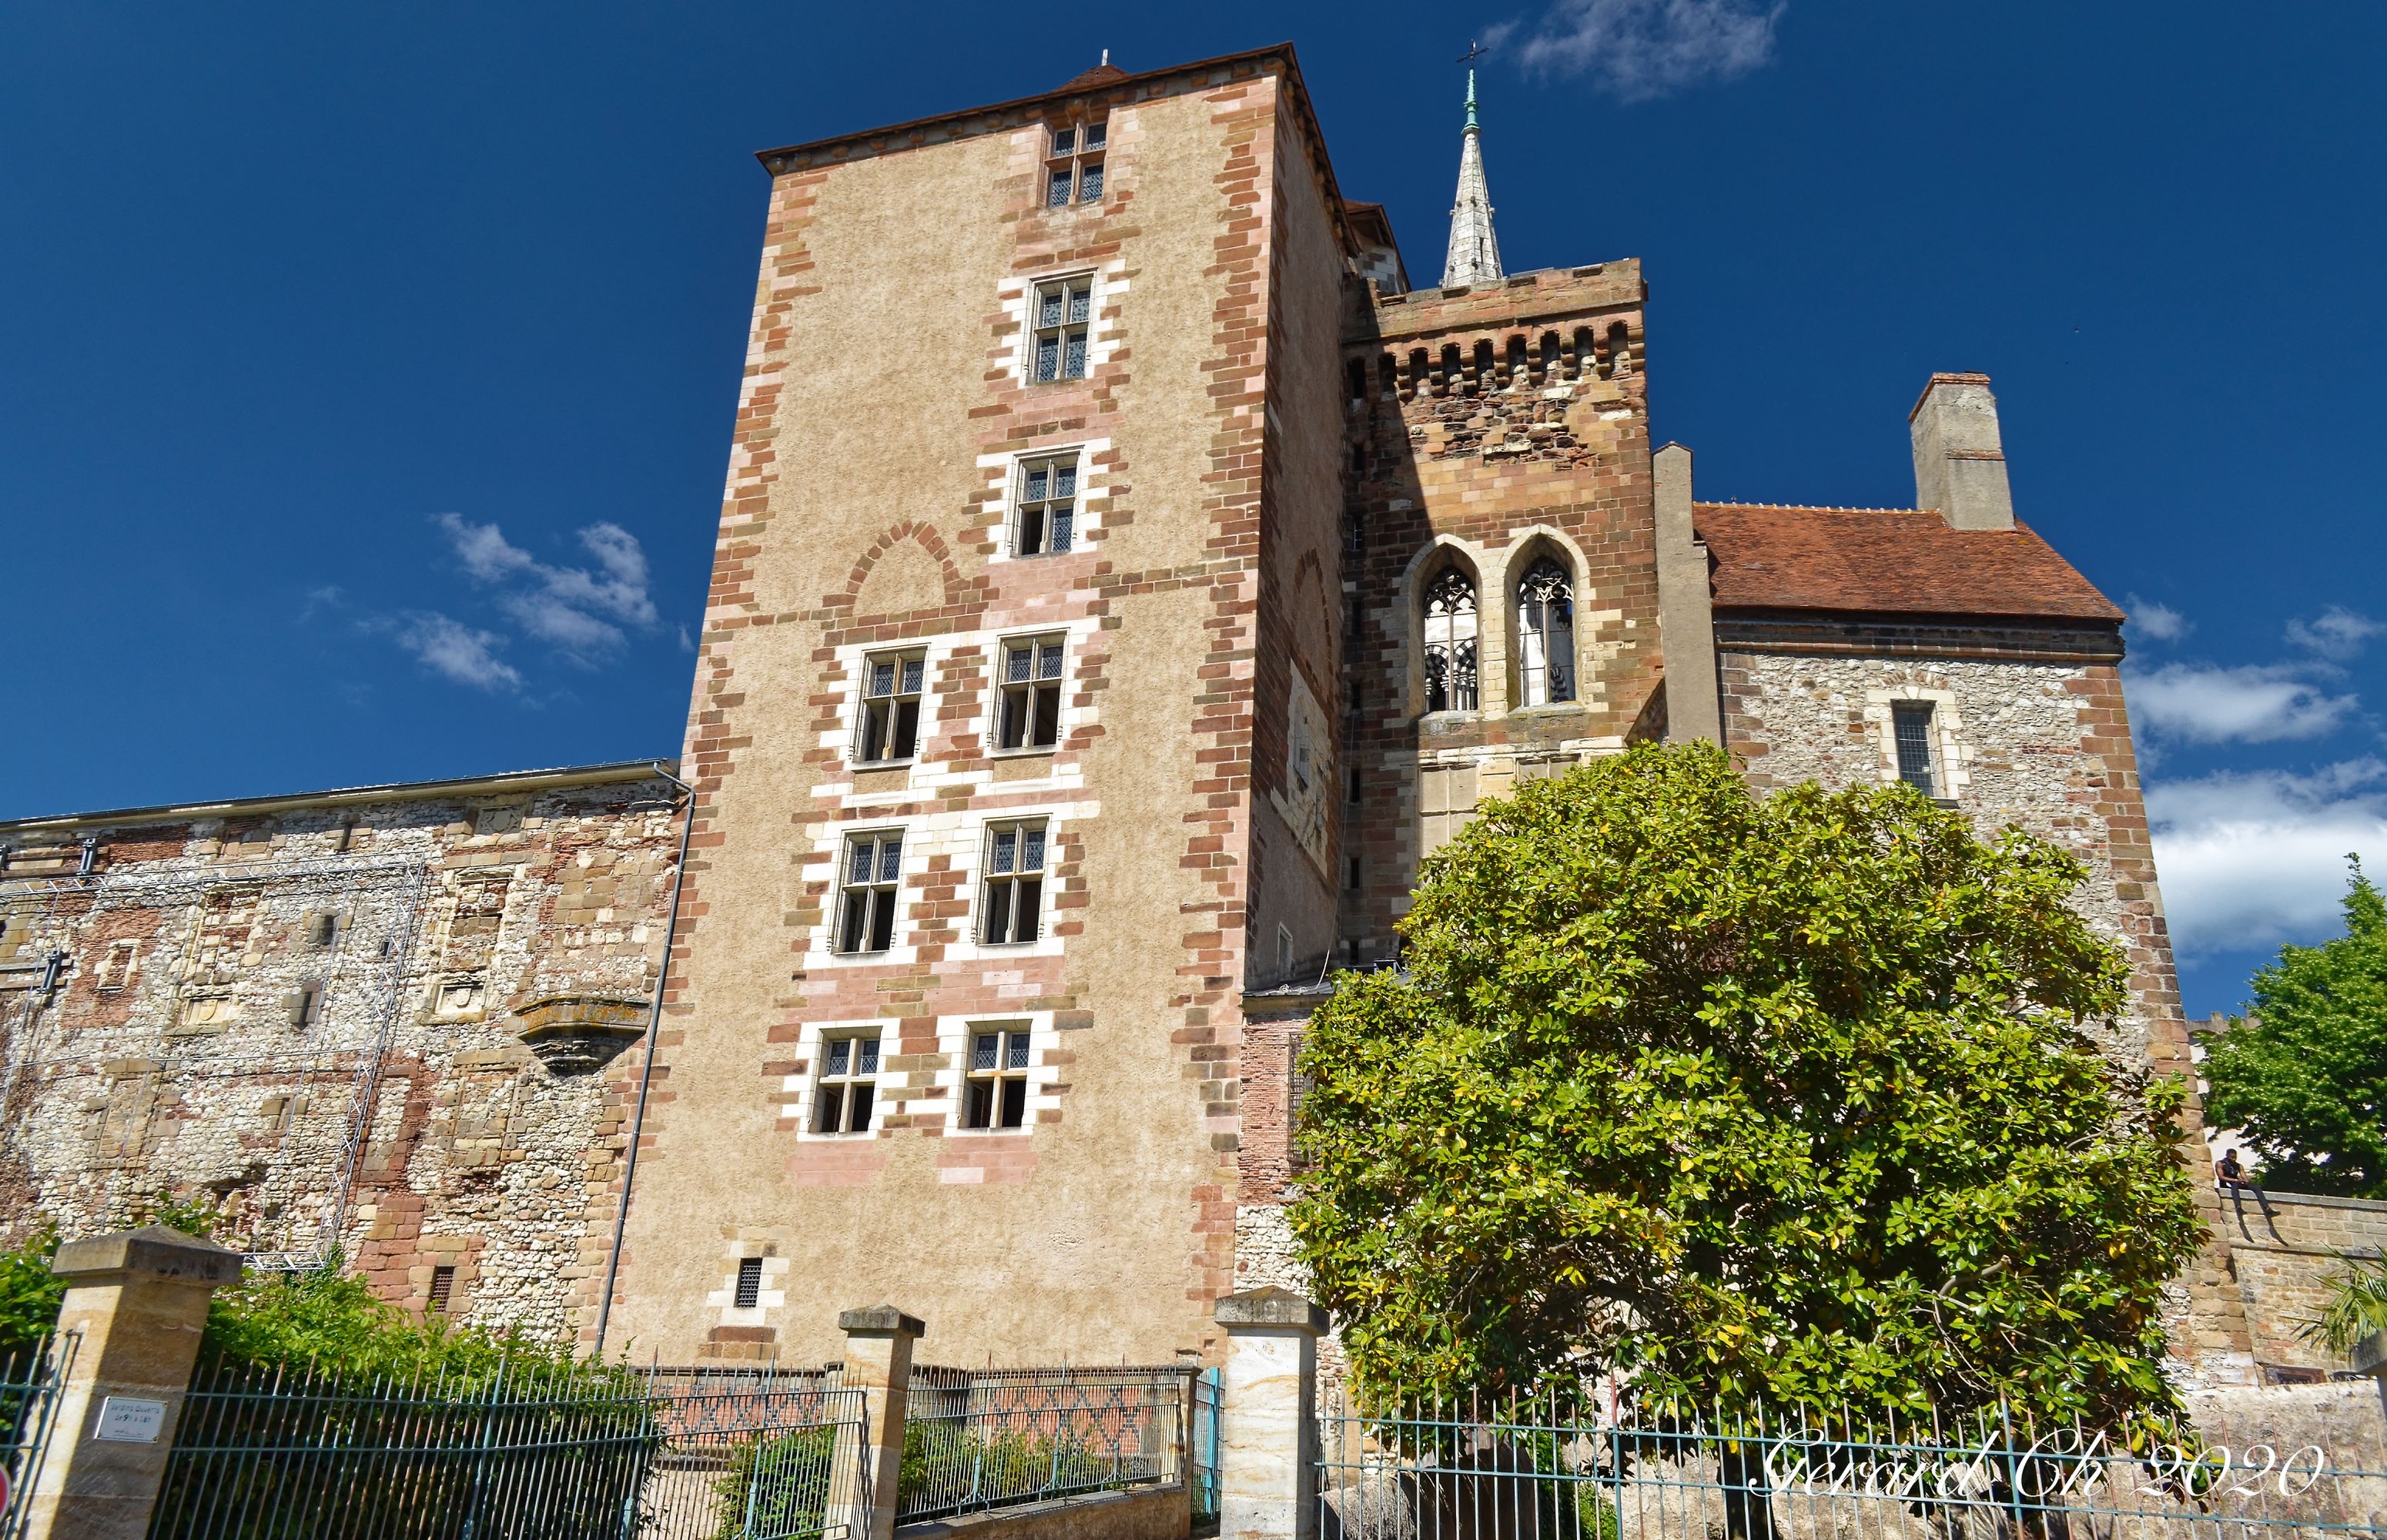 Château ducal "La Mal Coiffée" - Moulins - Allier